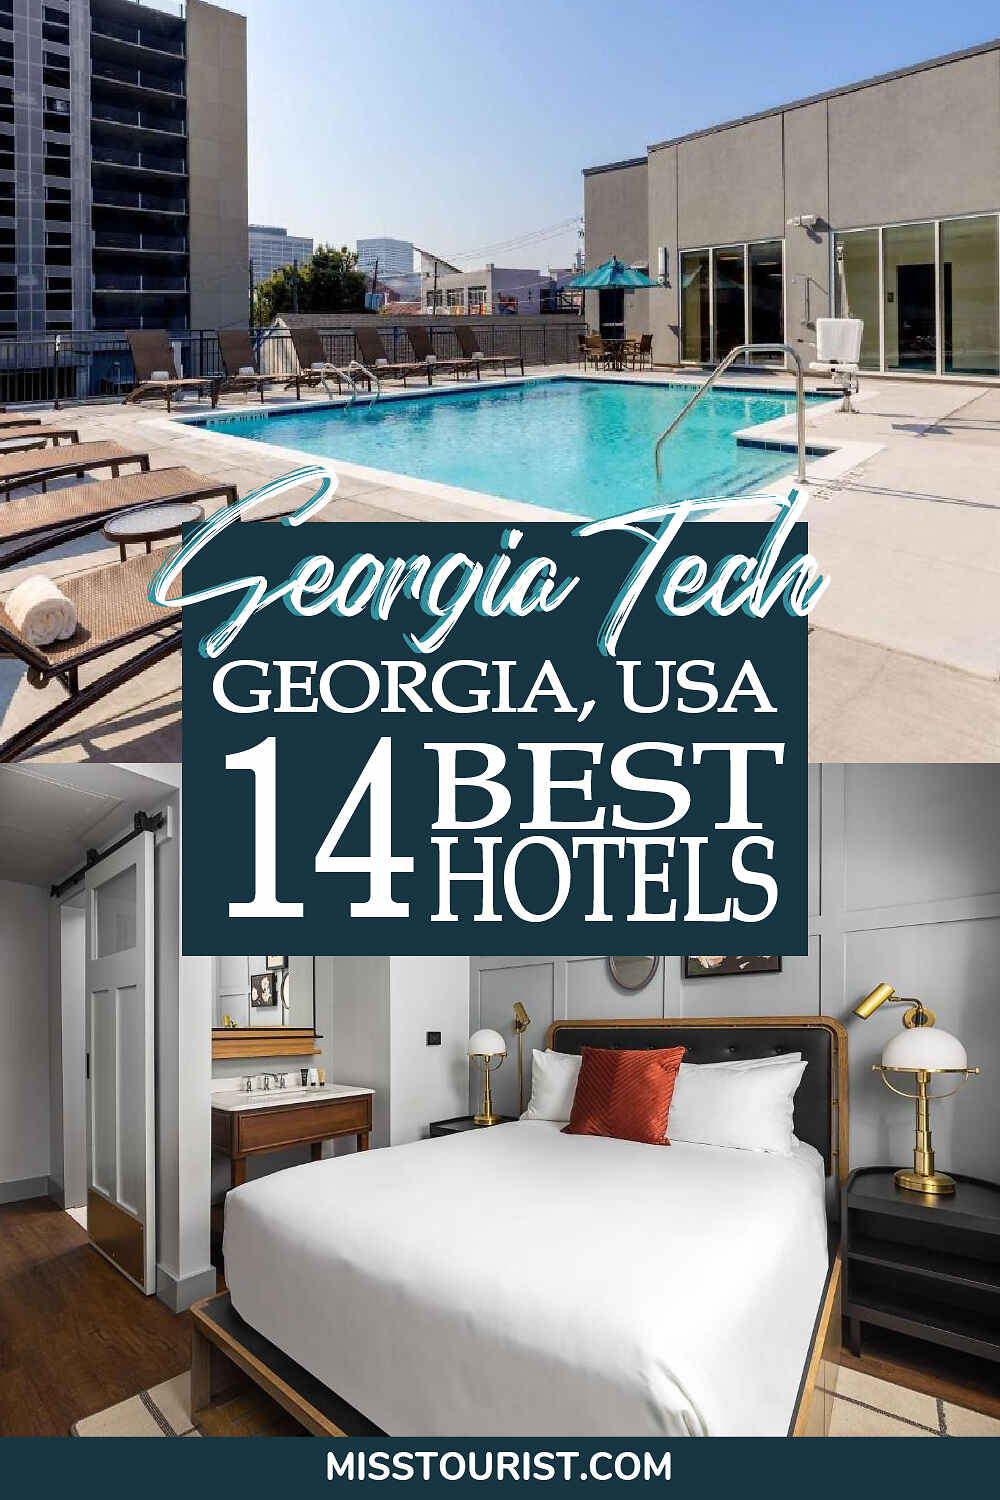 Hotels near Georgia Tech Pin 2